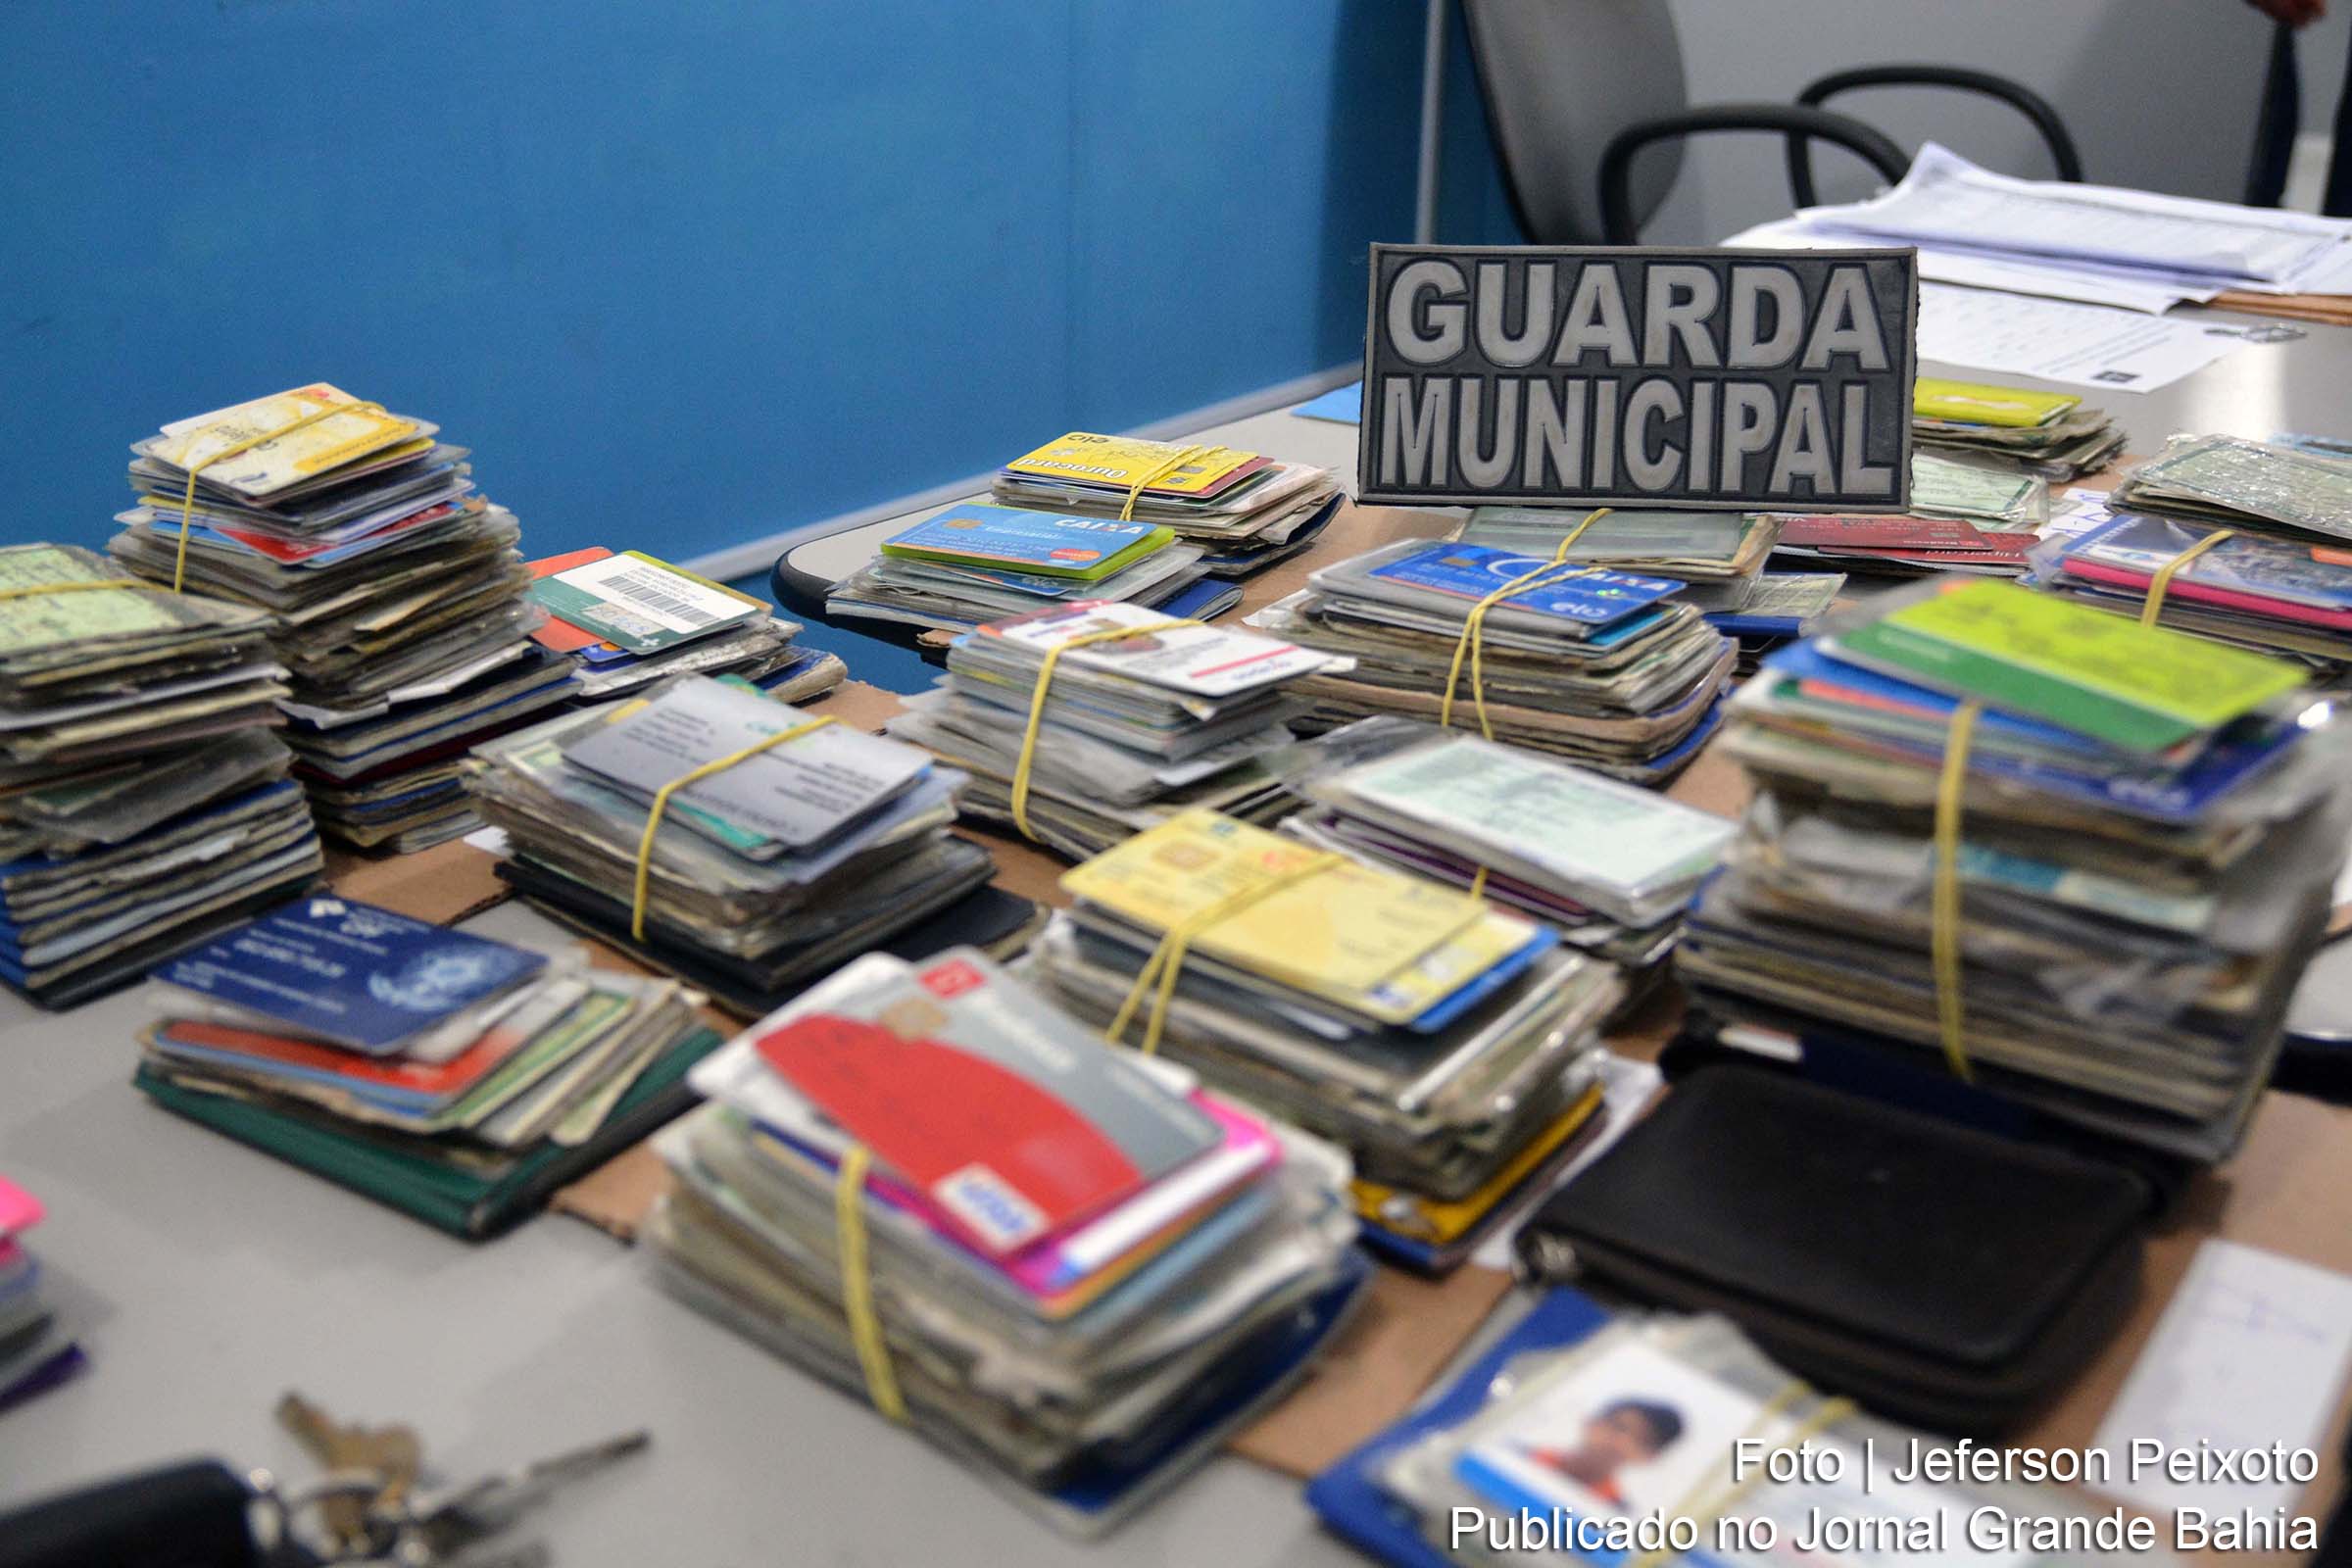 Documentos Perdidos durante o Carnaval 2019 de Salvador estarão disponíveis na sede da Guarda Municipal.